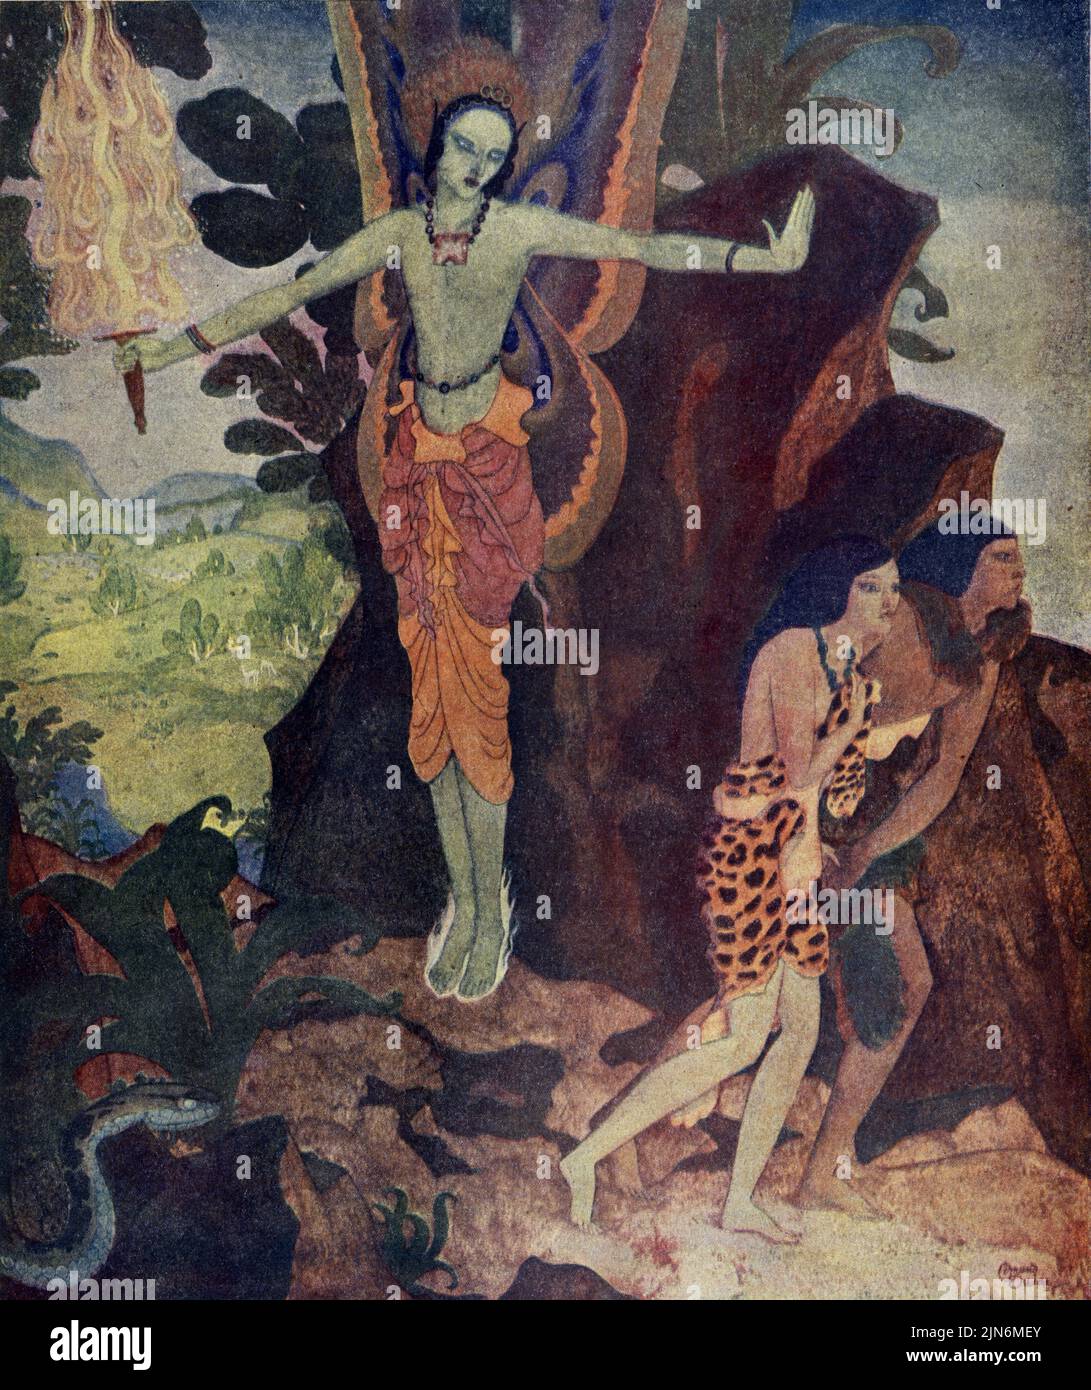 « The Angel with the Flaming Sword Drives Adam and Eve Out of Eden » publié le 5,1924 octobre dans le magazine American Weekly peint par Edmund Dulac. Banque D'Images